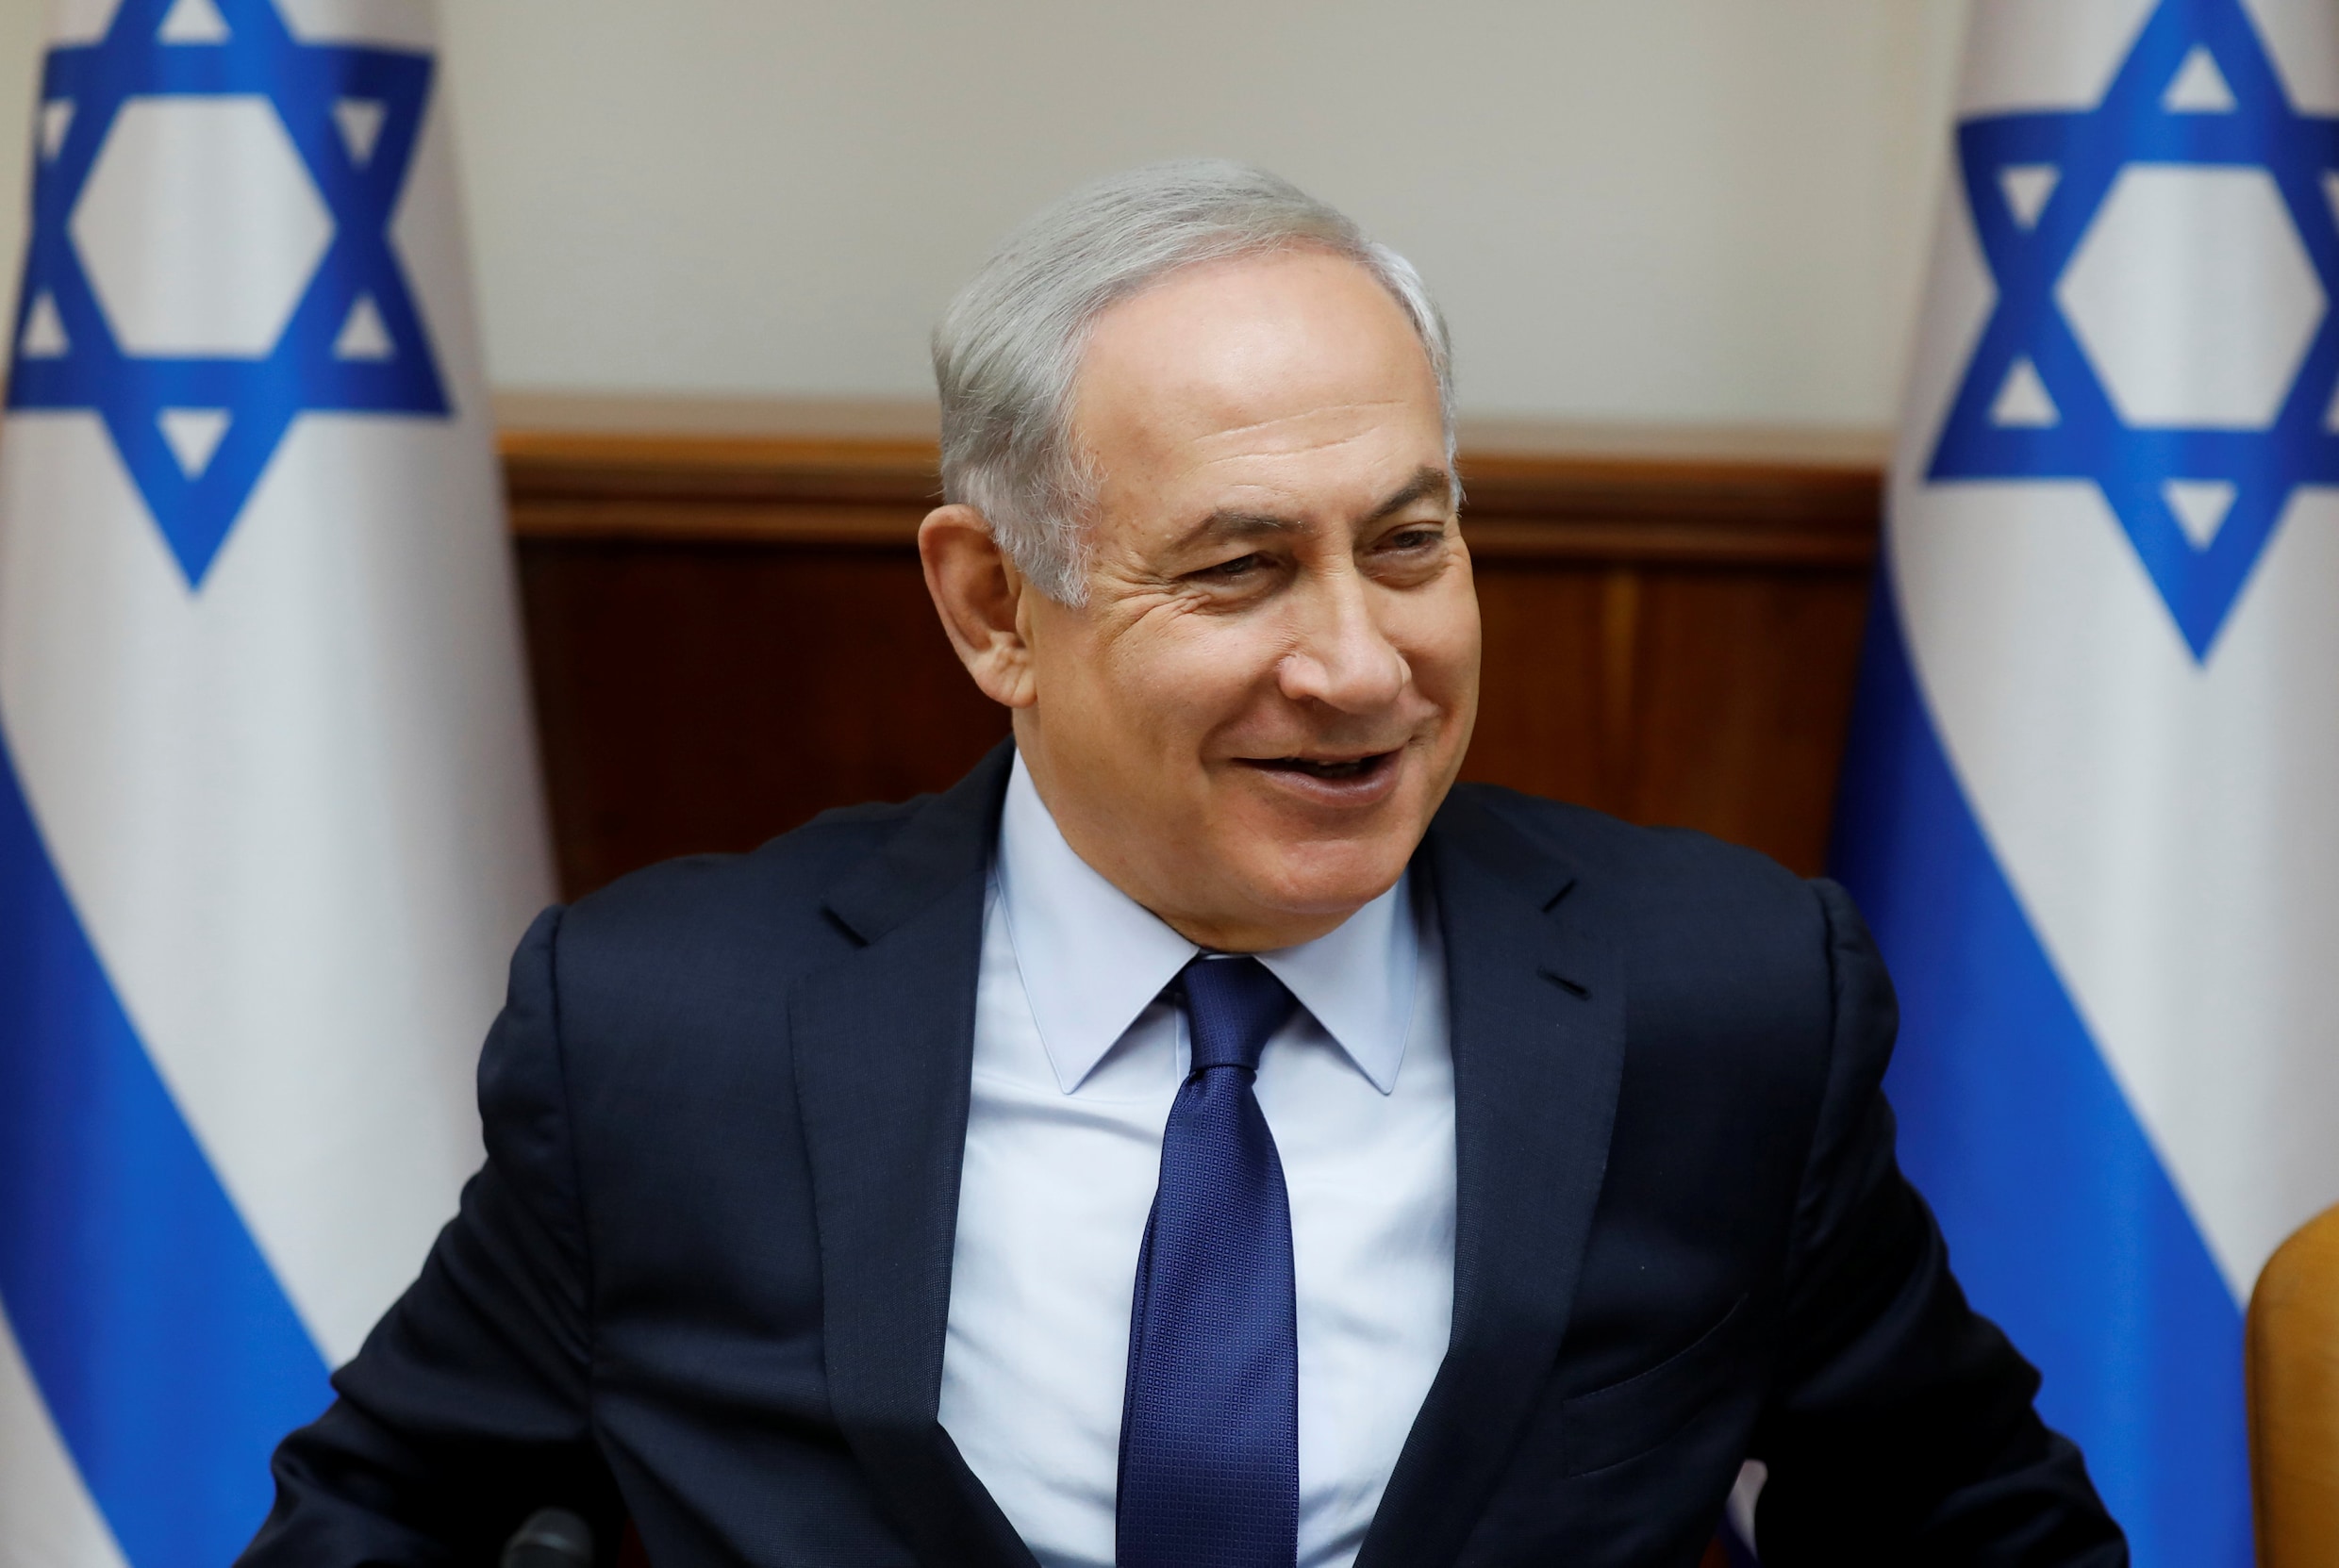 Israëlische premier Netanyahu officieel beschuldigd van omkoping en fraude